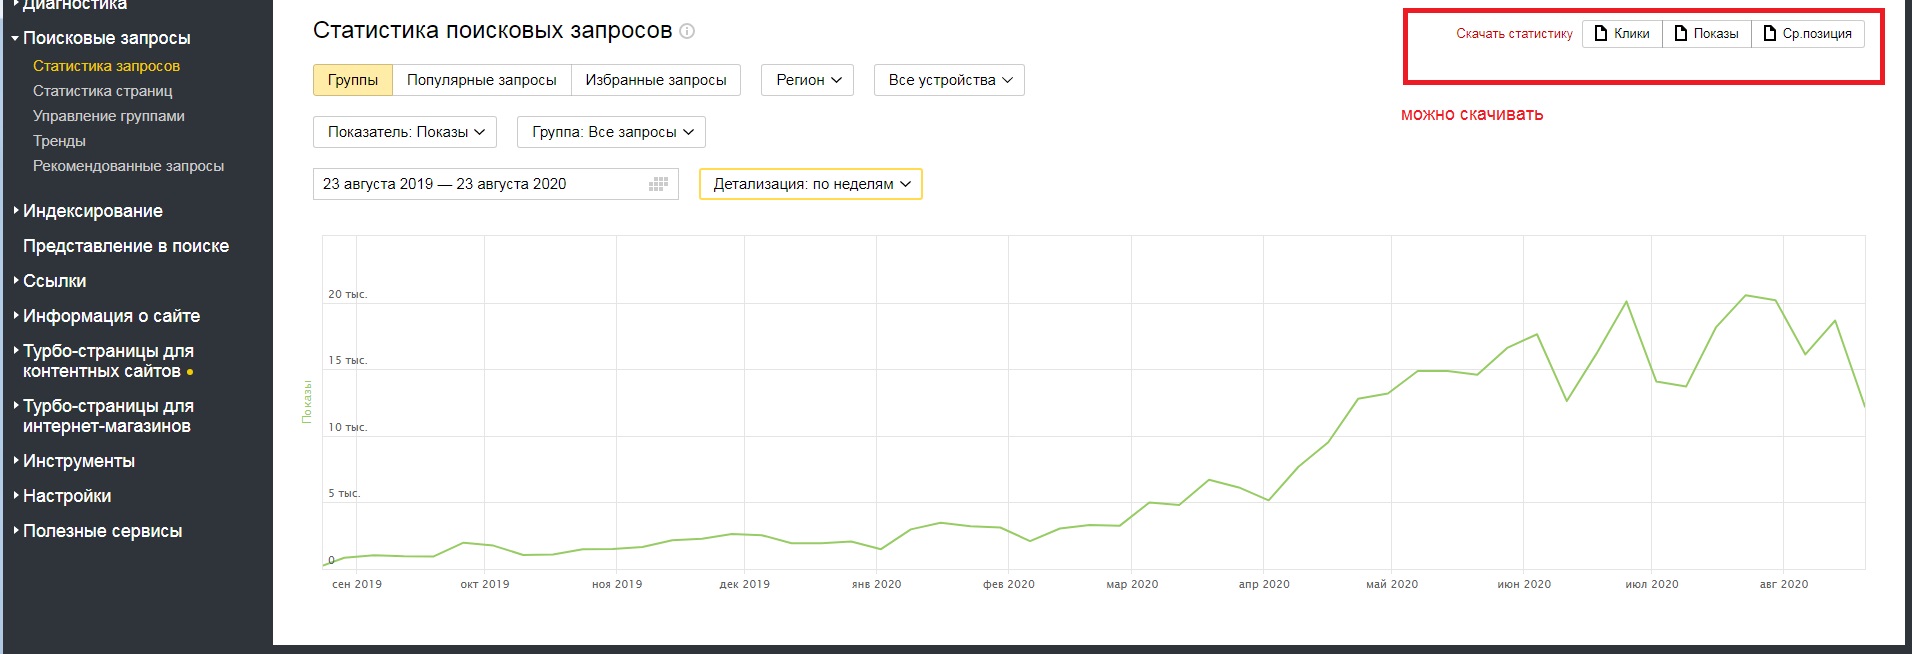 вебмаcтер яндекса для seo, рост показов сайта в Яндексе